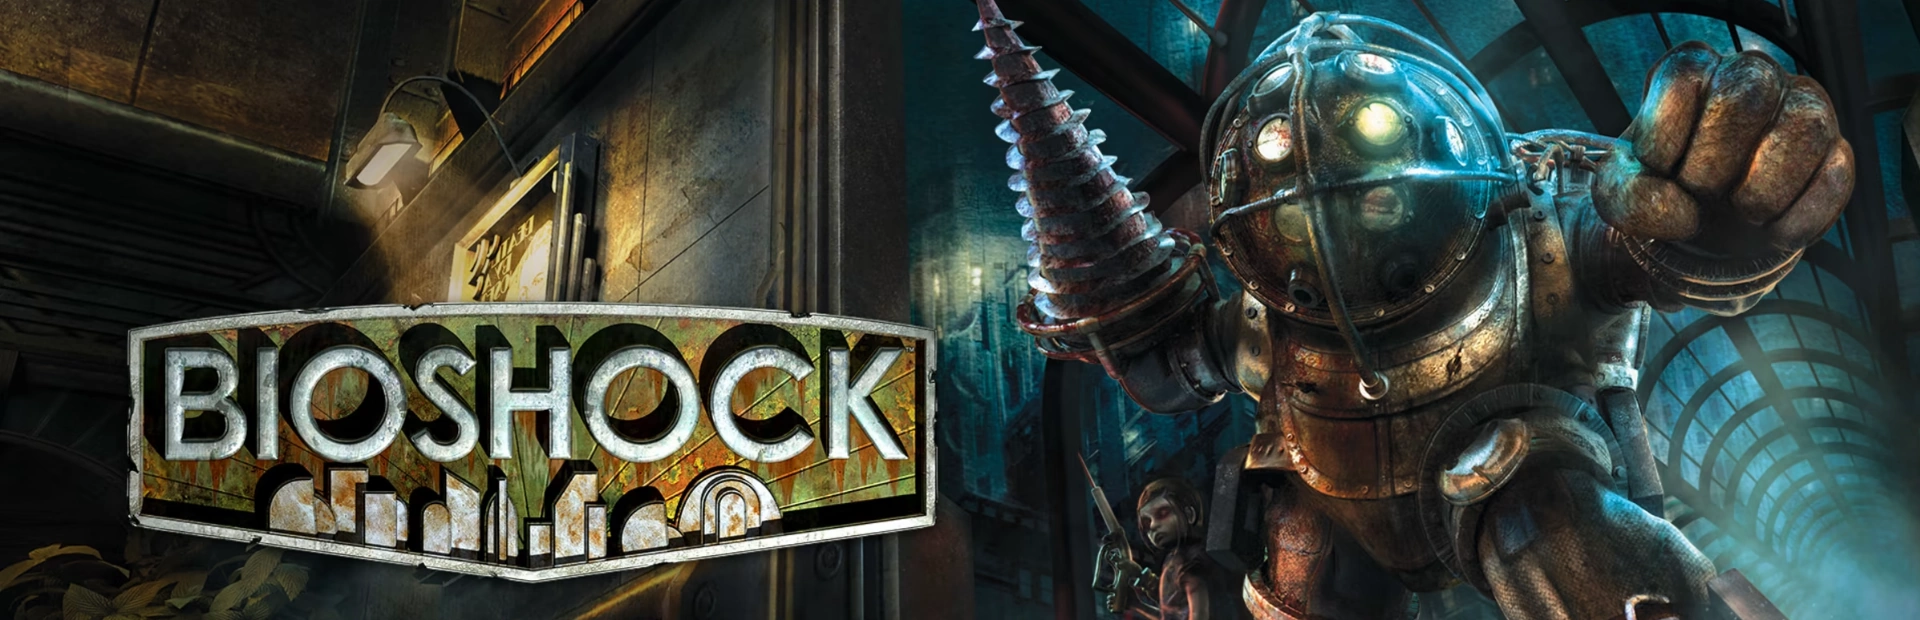 BioShock Remastered.banner1